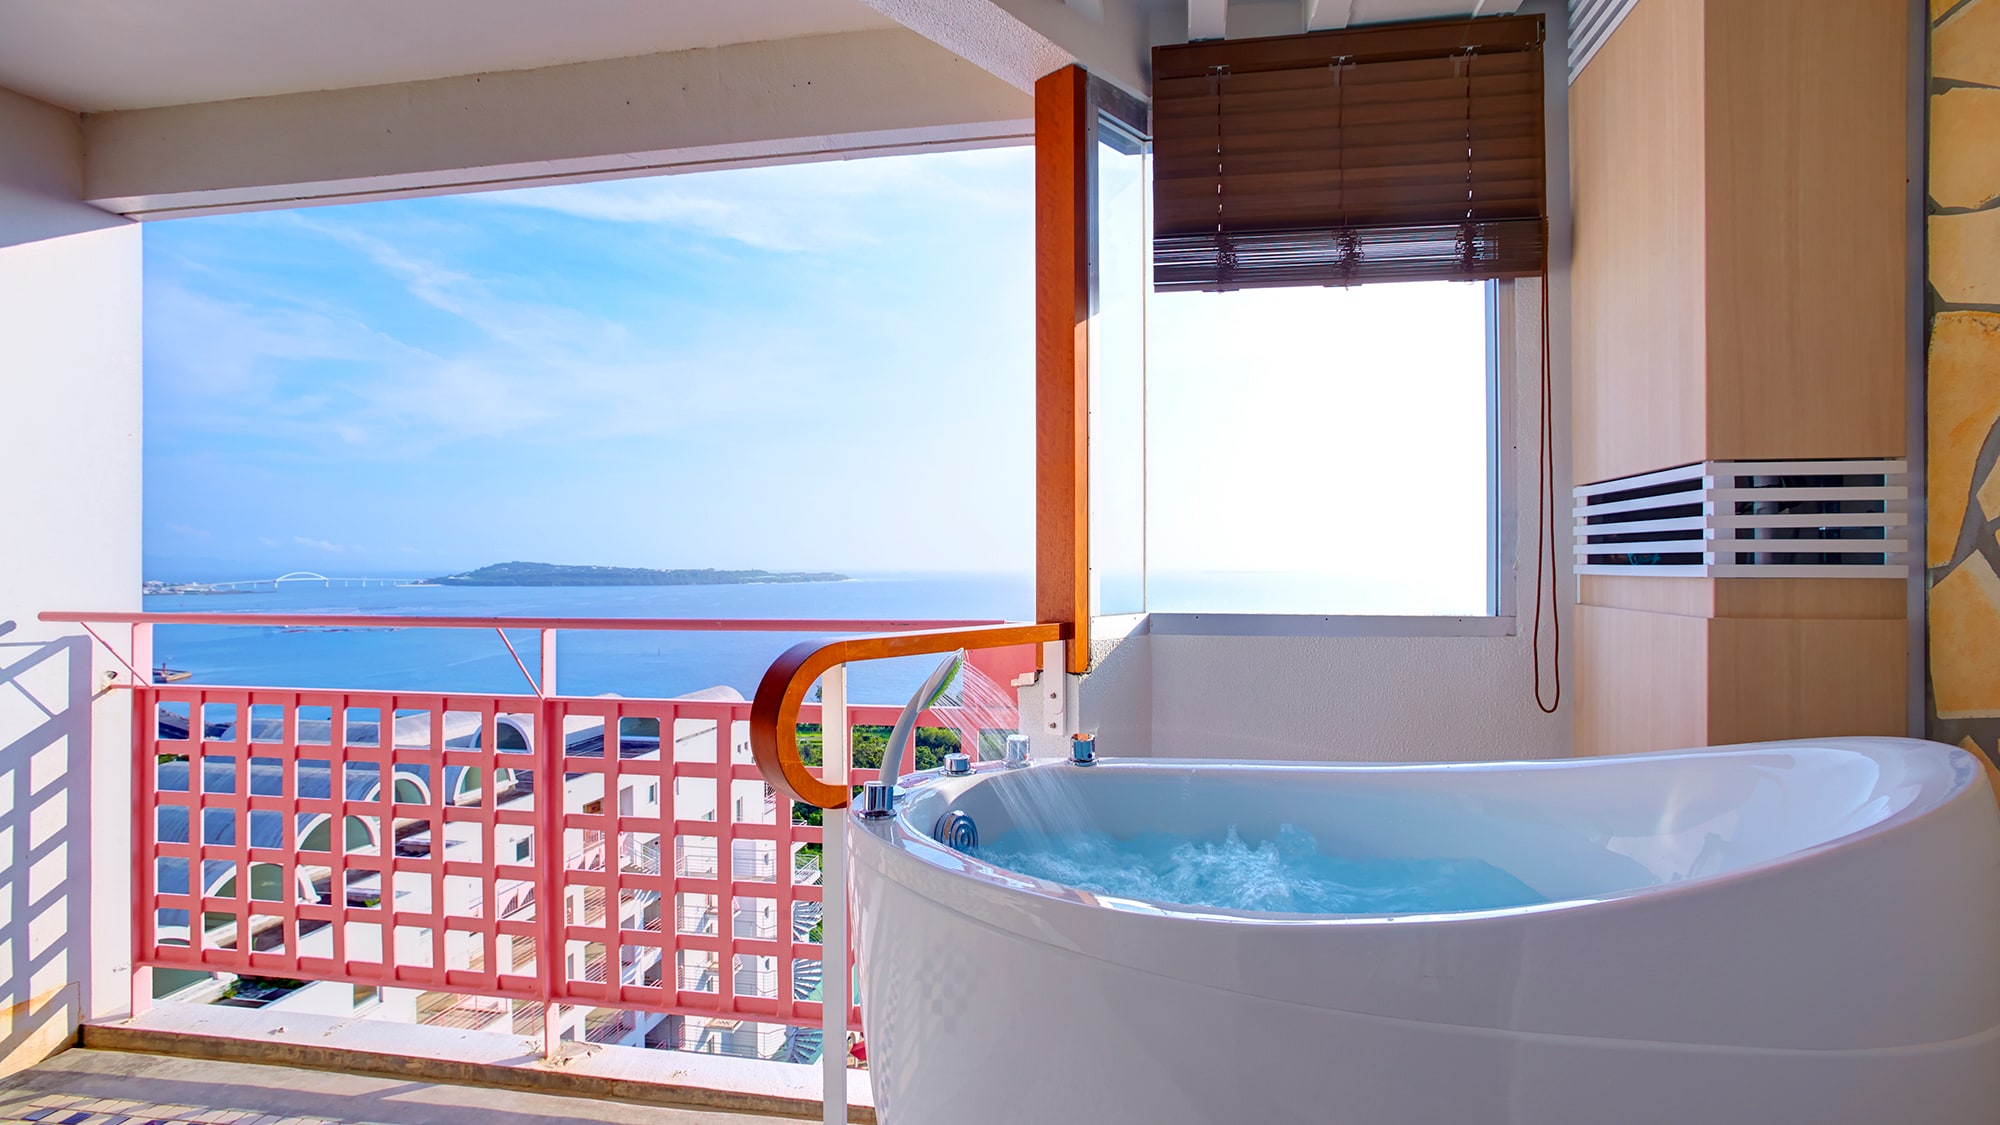 【远洋尊贵西式房+观景浴】尊贵双床房。阳台上设有观景浴池。特别的